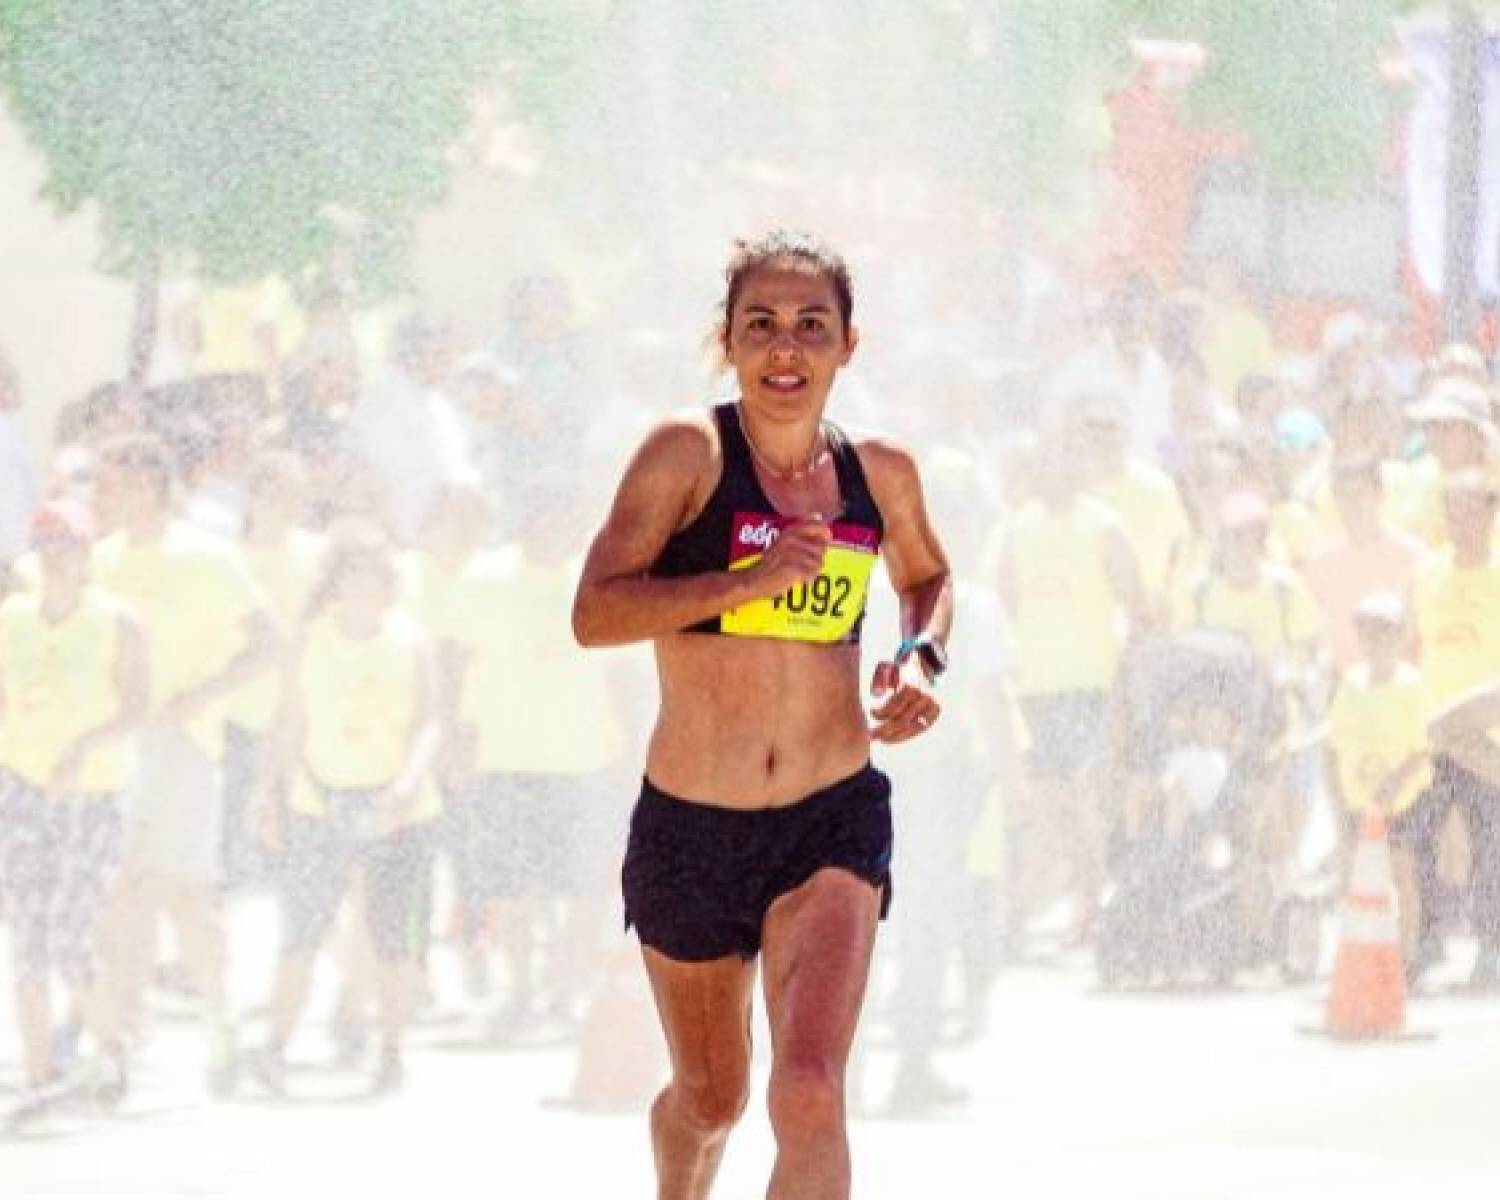 Jak trenować do maratonu: Poradnik dla początkujących